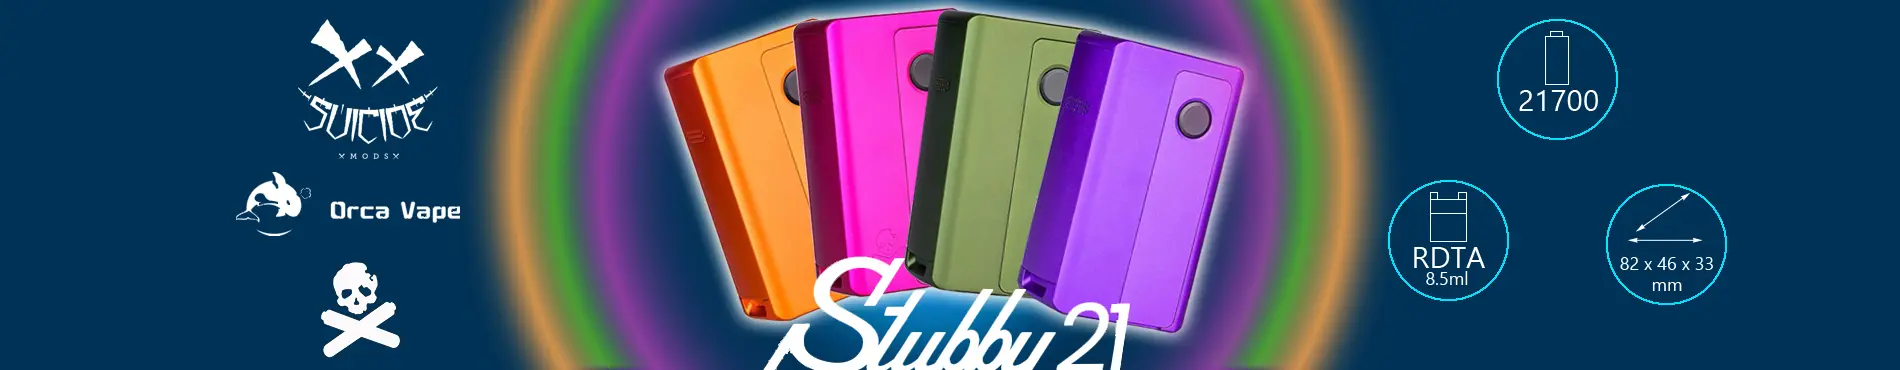 Stubby21 - Box Mod AIO